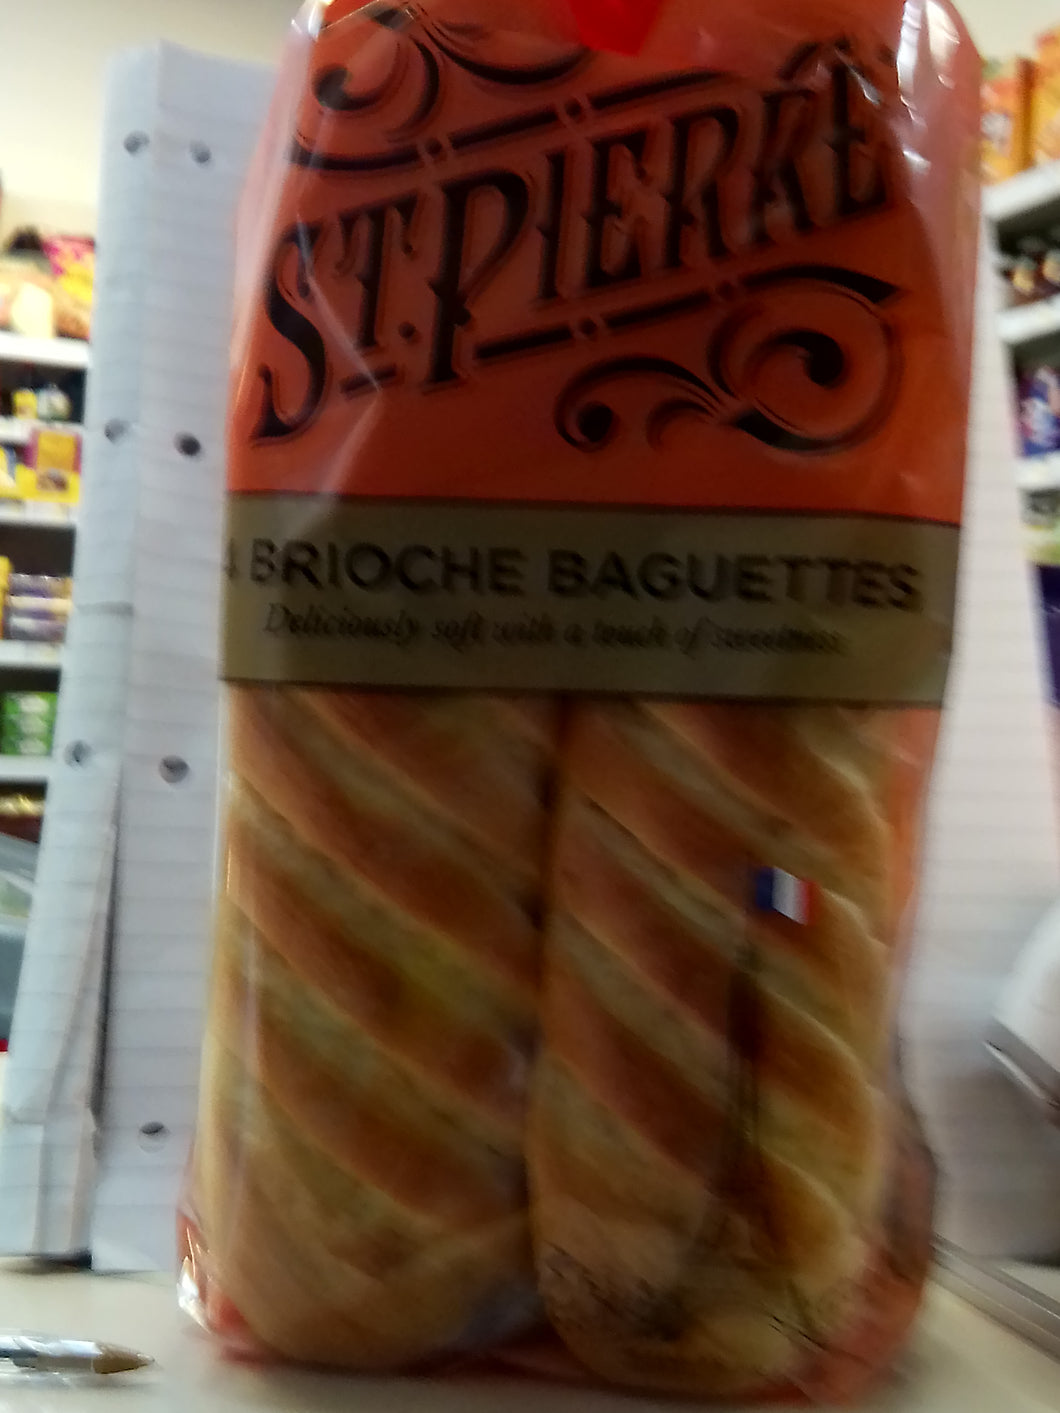 Brioche baguettes 4pk